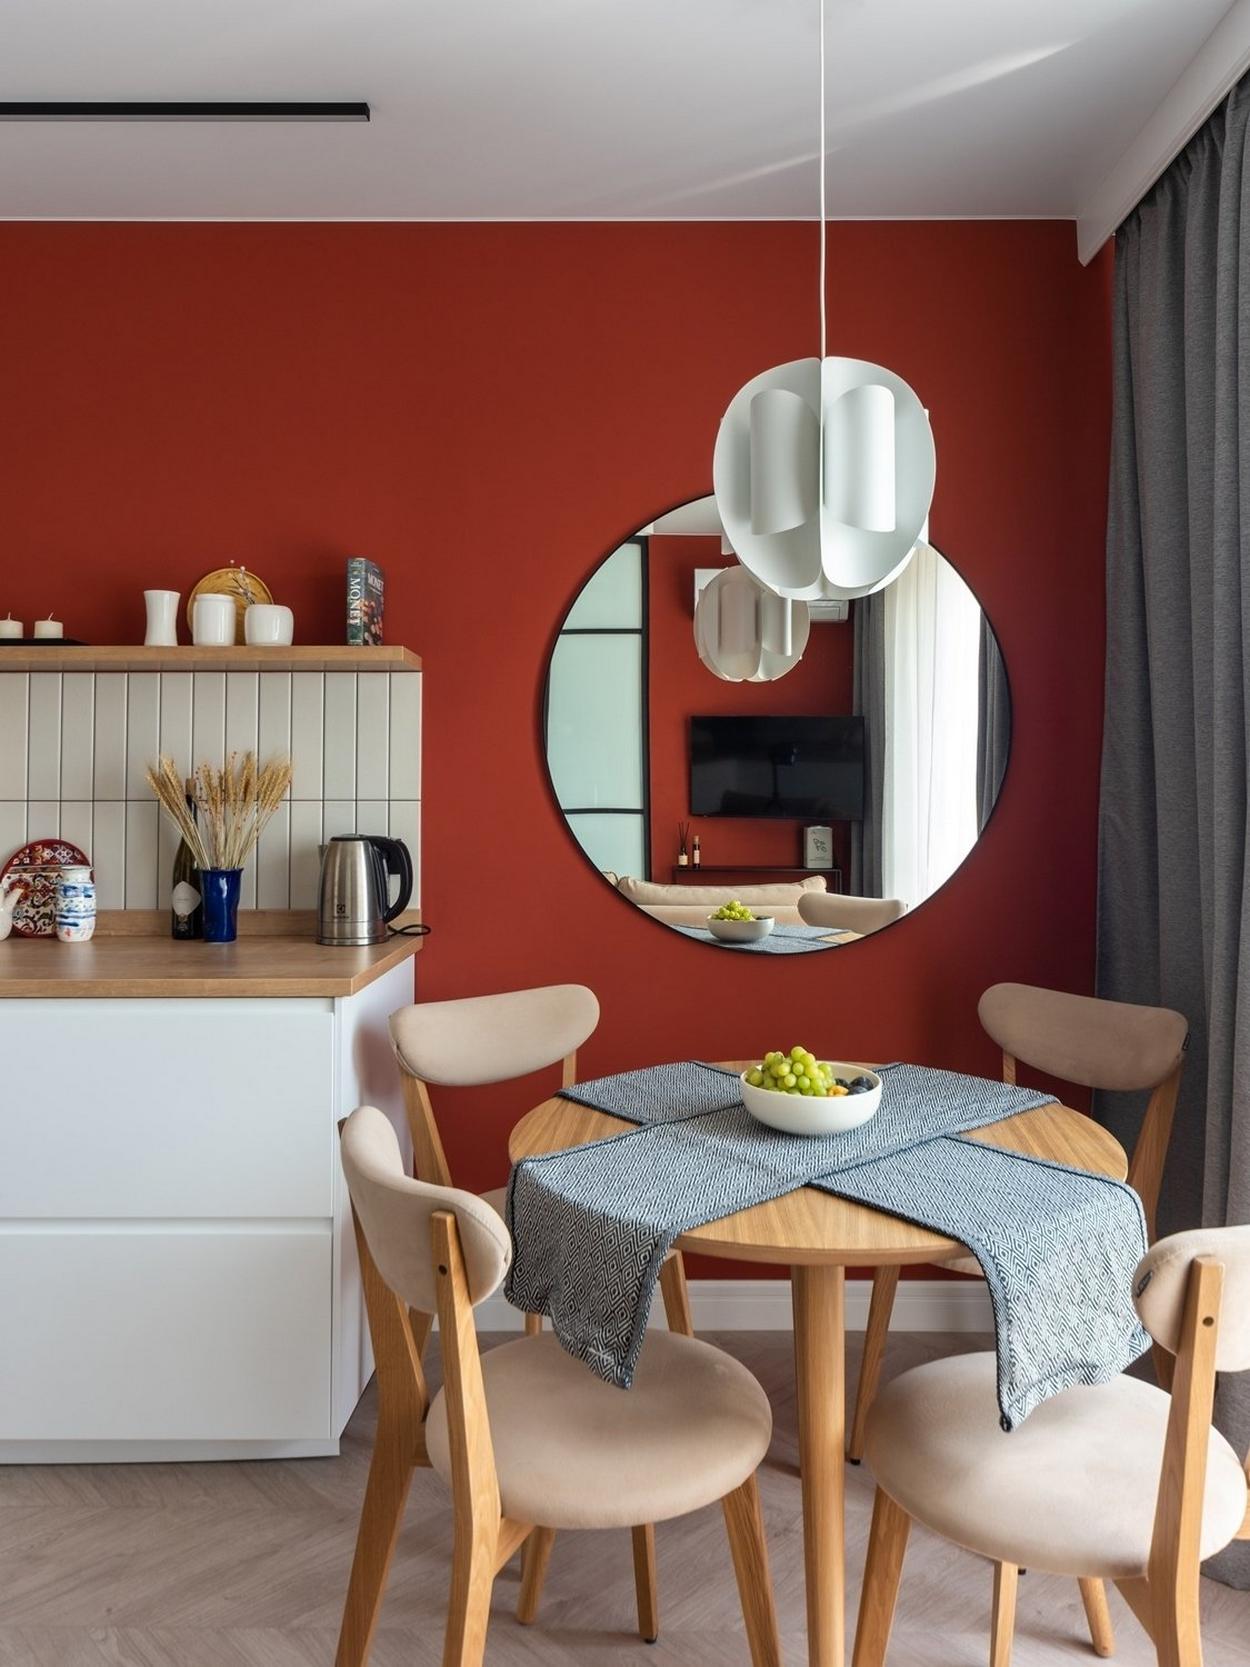 Konyhatervezés felső falra szerelt konyhaszekrények nélkül - modern, tágasabb, szellősebb konyha design